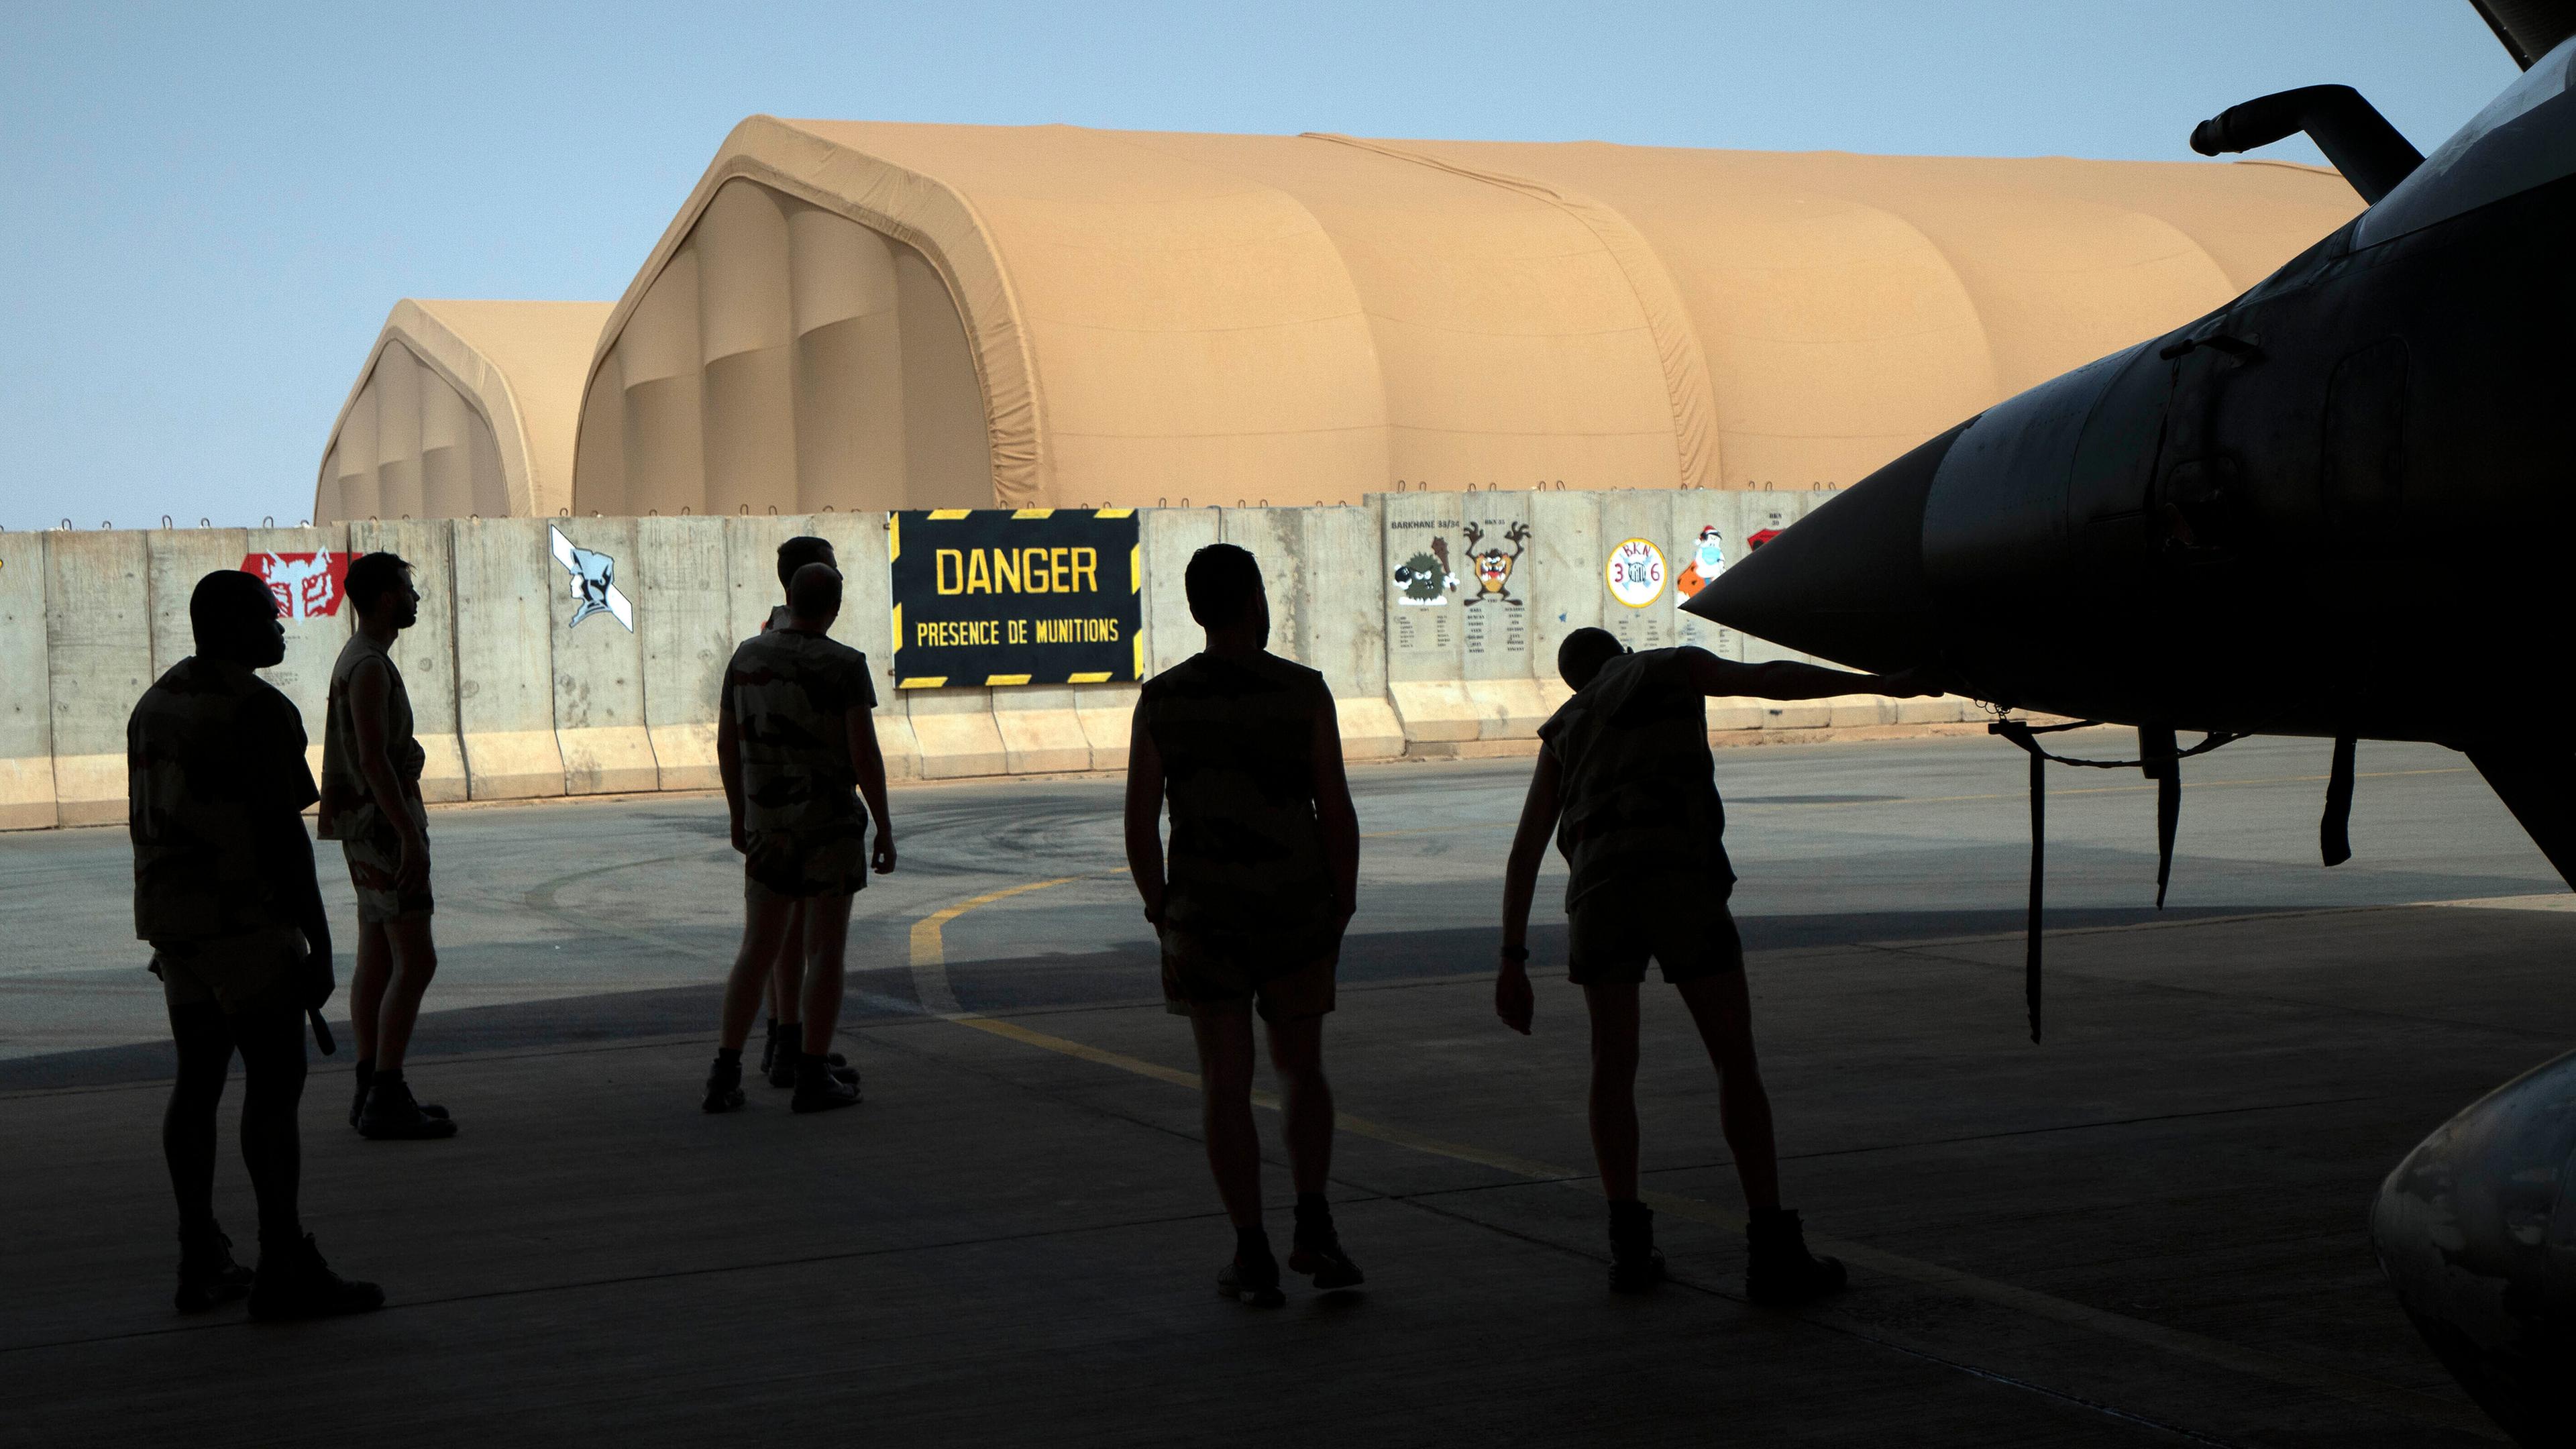 Französische Soldaten der Luftwaffe stehen neben einem Kampfjet in einem Hangar